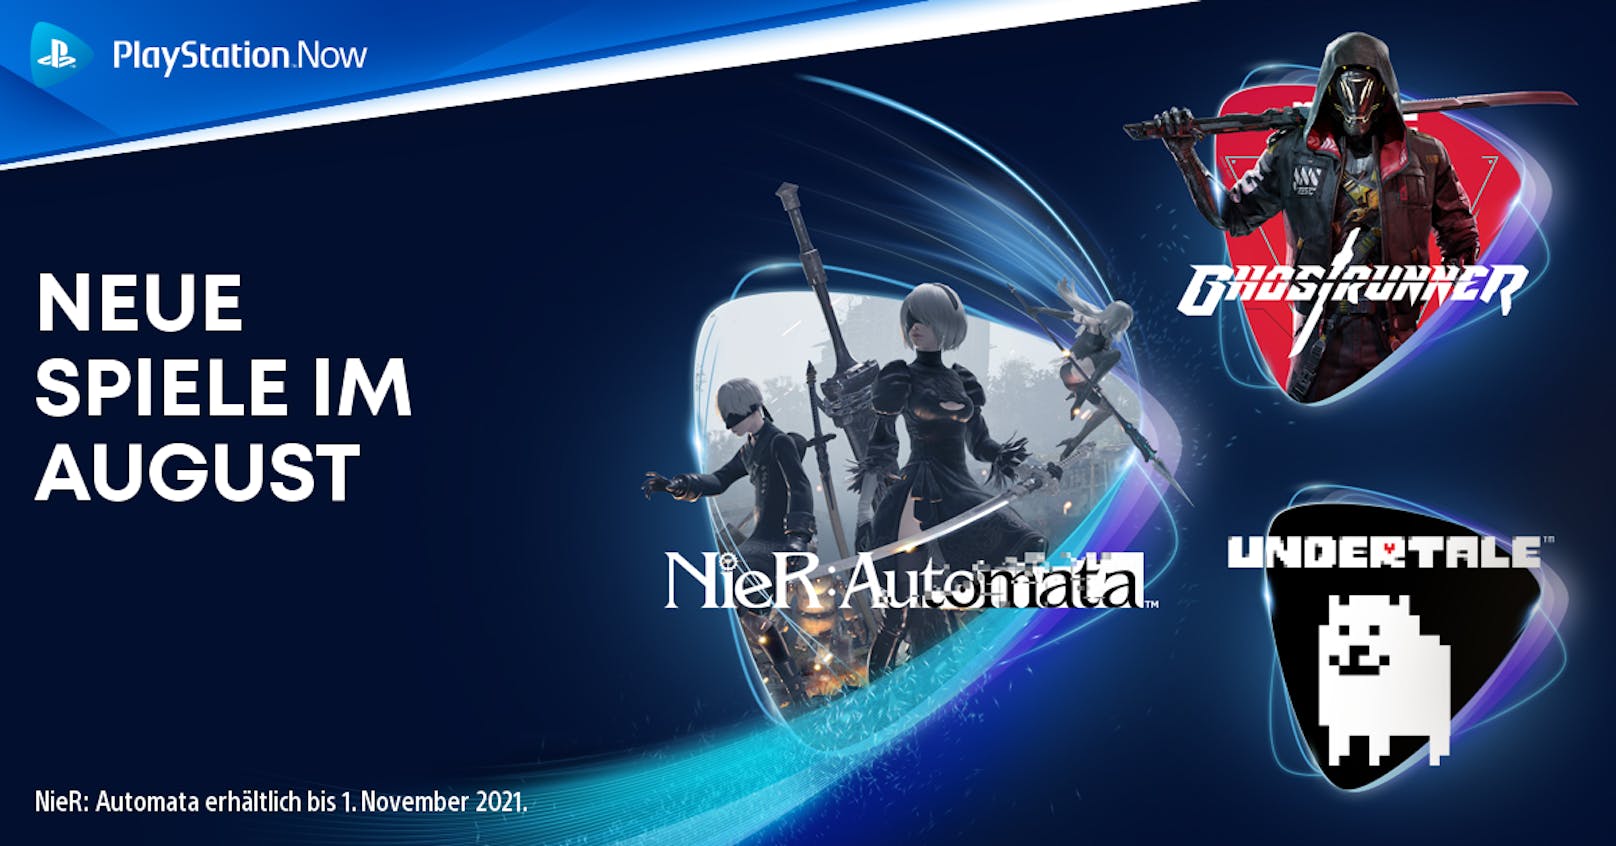 PlayStations Spiele-Abo-Dienst PlayStation Now präsentiert die neuen Titel.